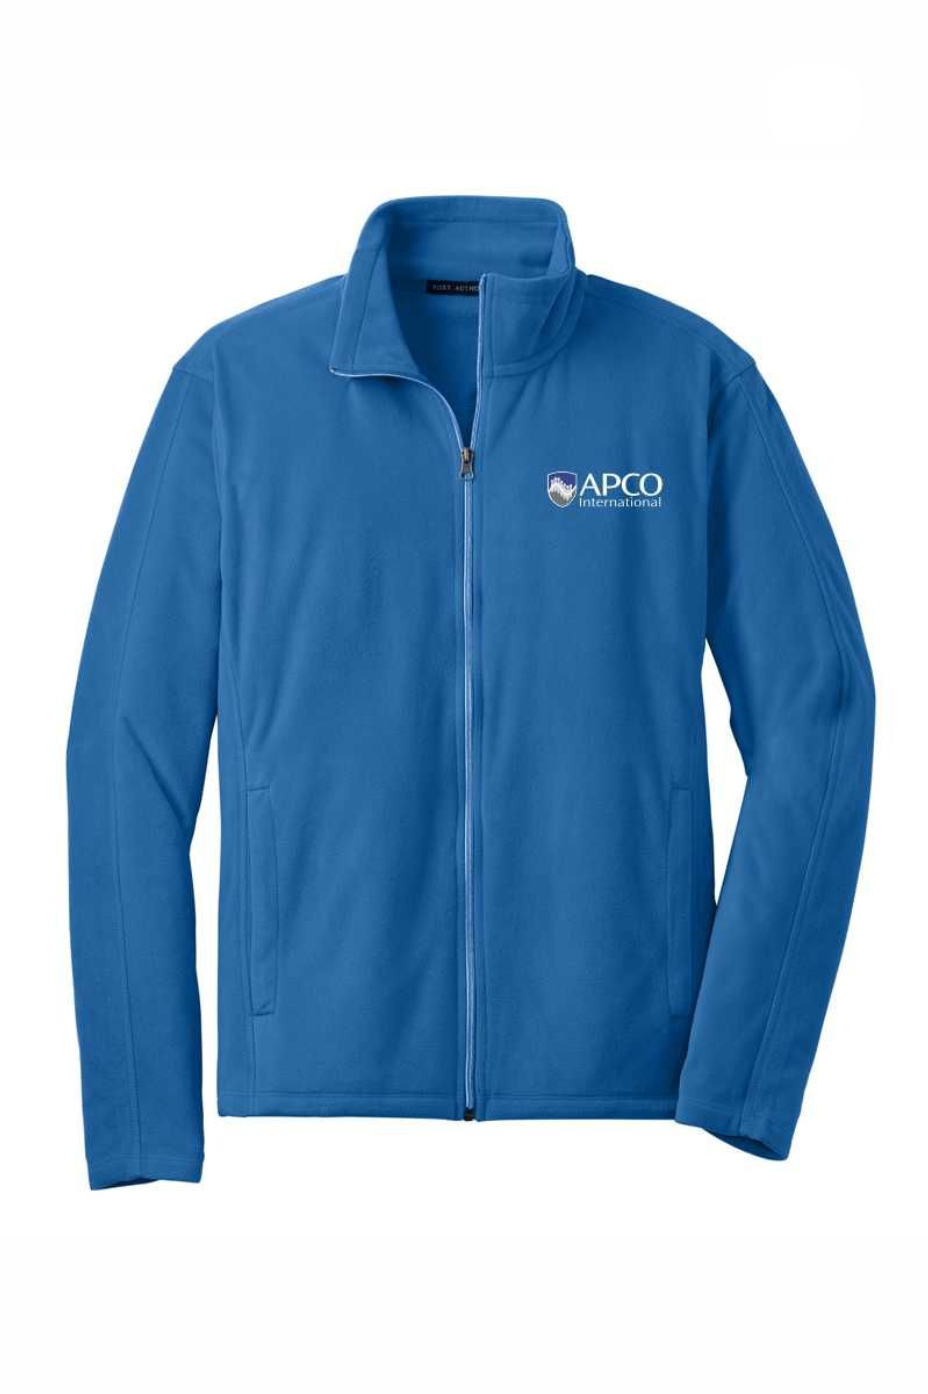 APCO - Port Authority Microfleece Jacket